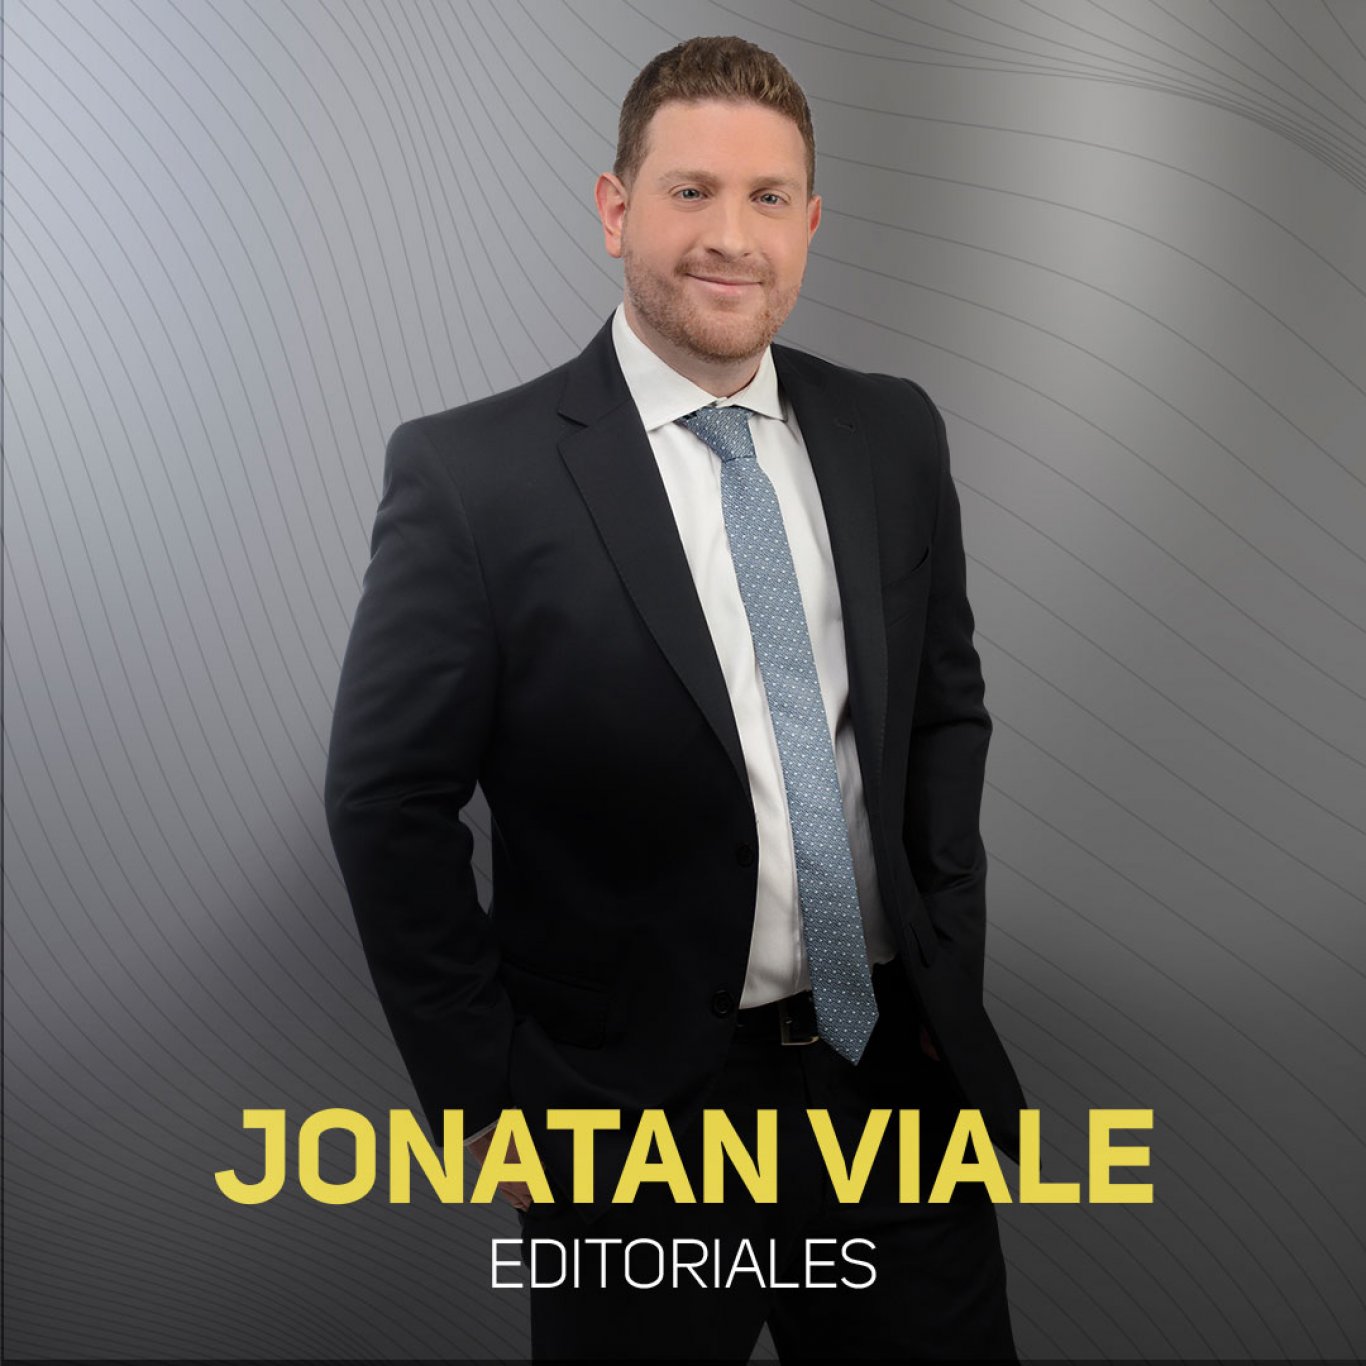 Radio Rivadavia y las editoriales de Jonatan Viale